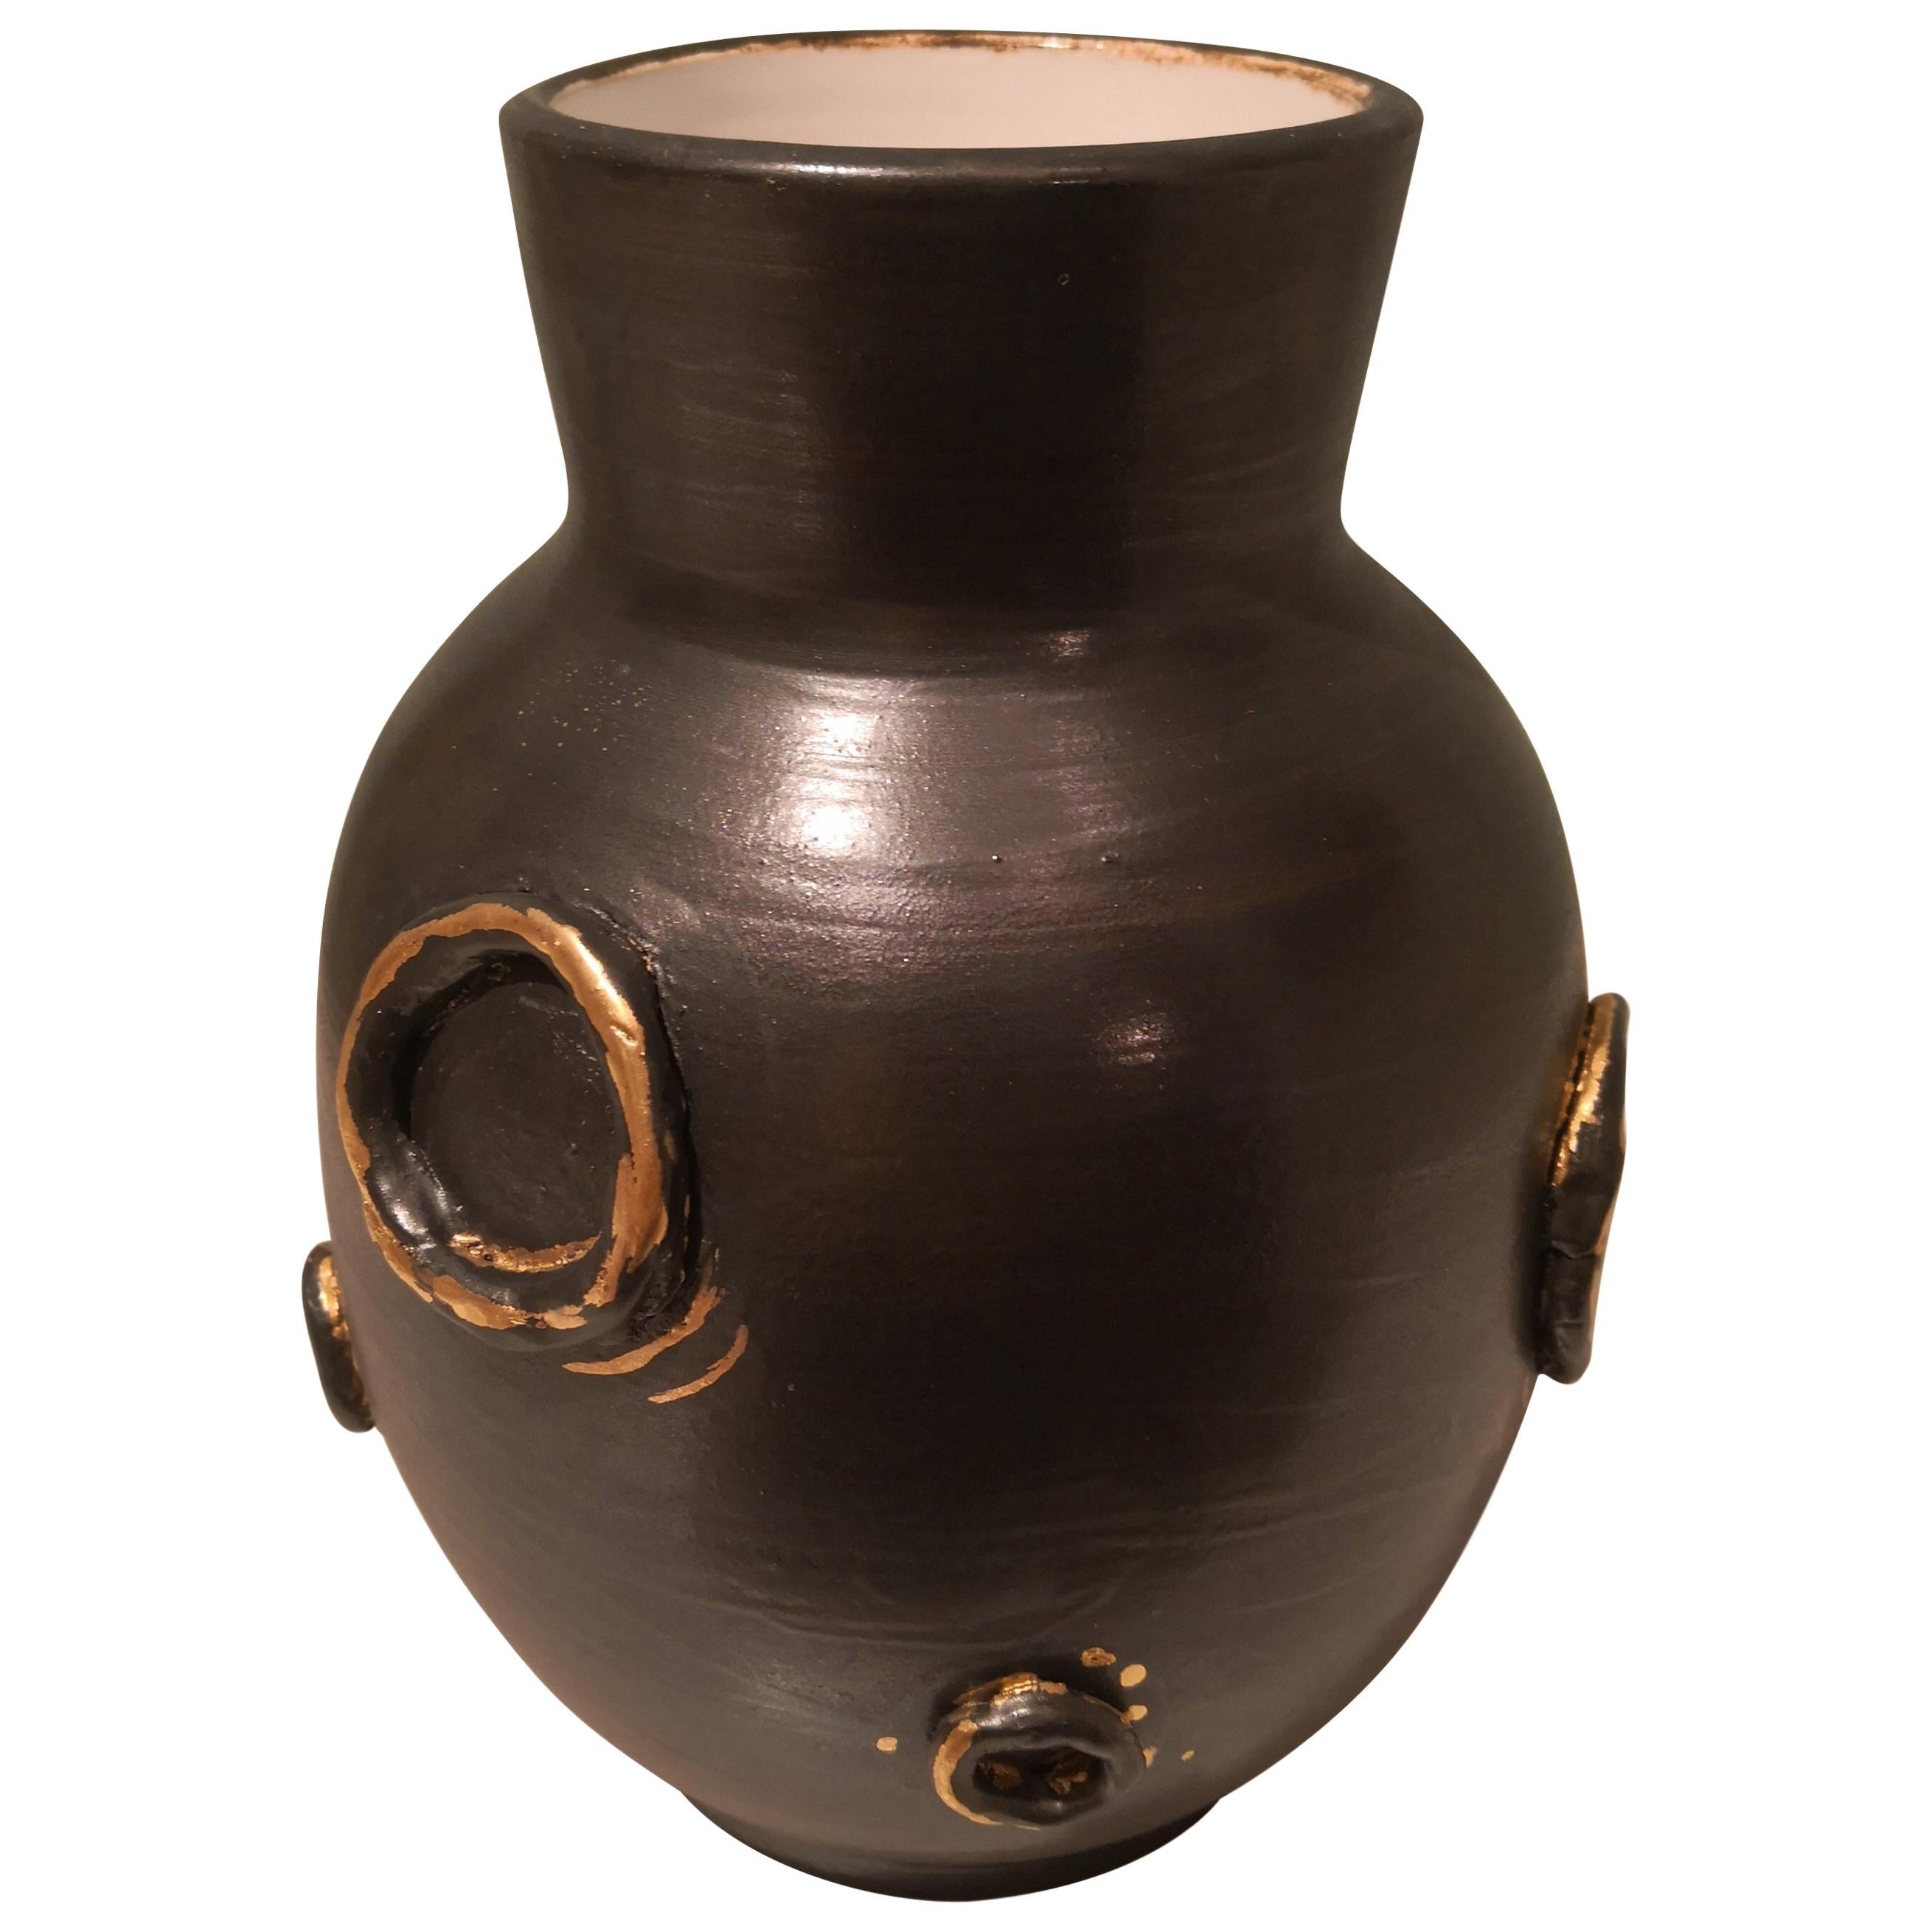 Moderne Keramik Vase Urne Handgefertigt Sofina Boutique Kitzbühel